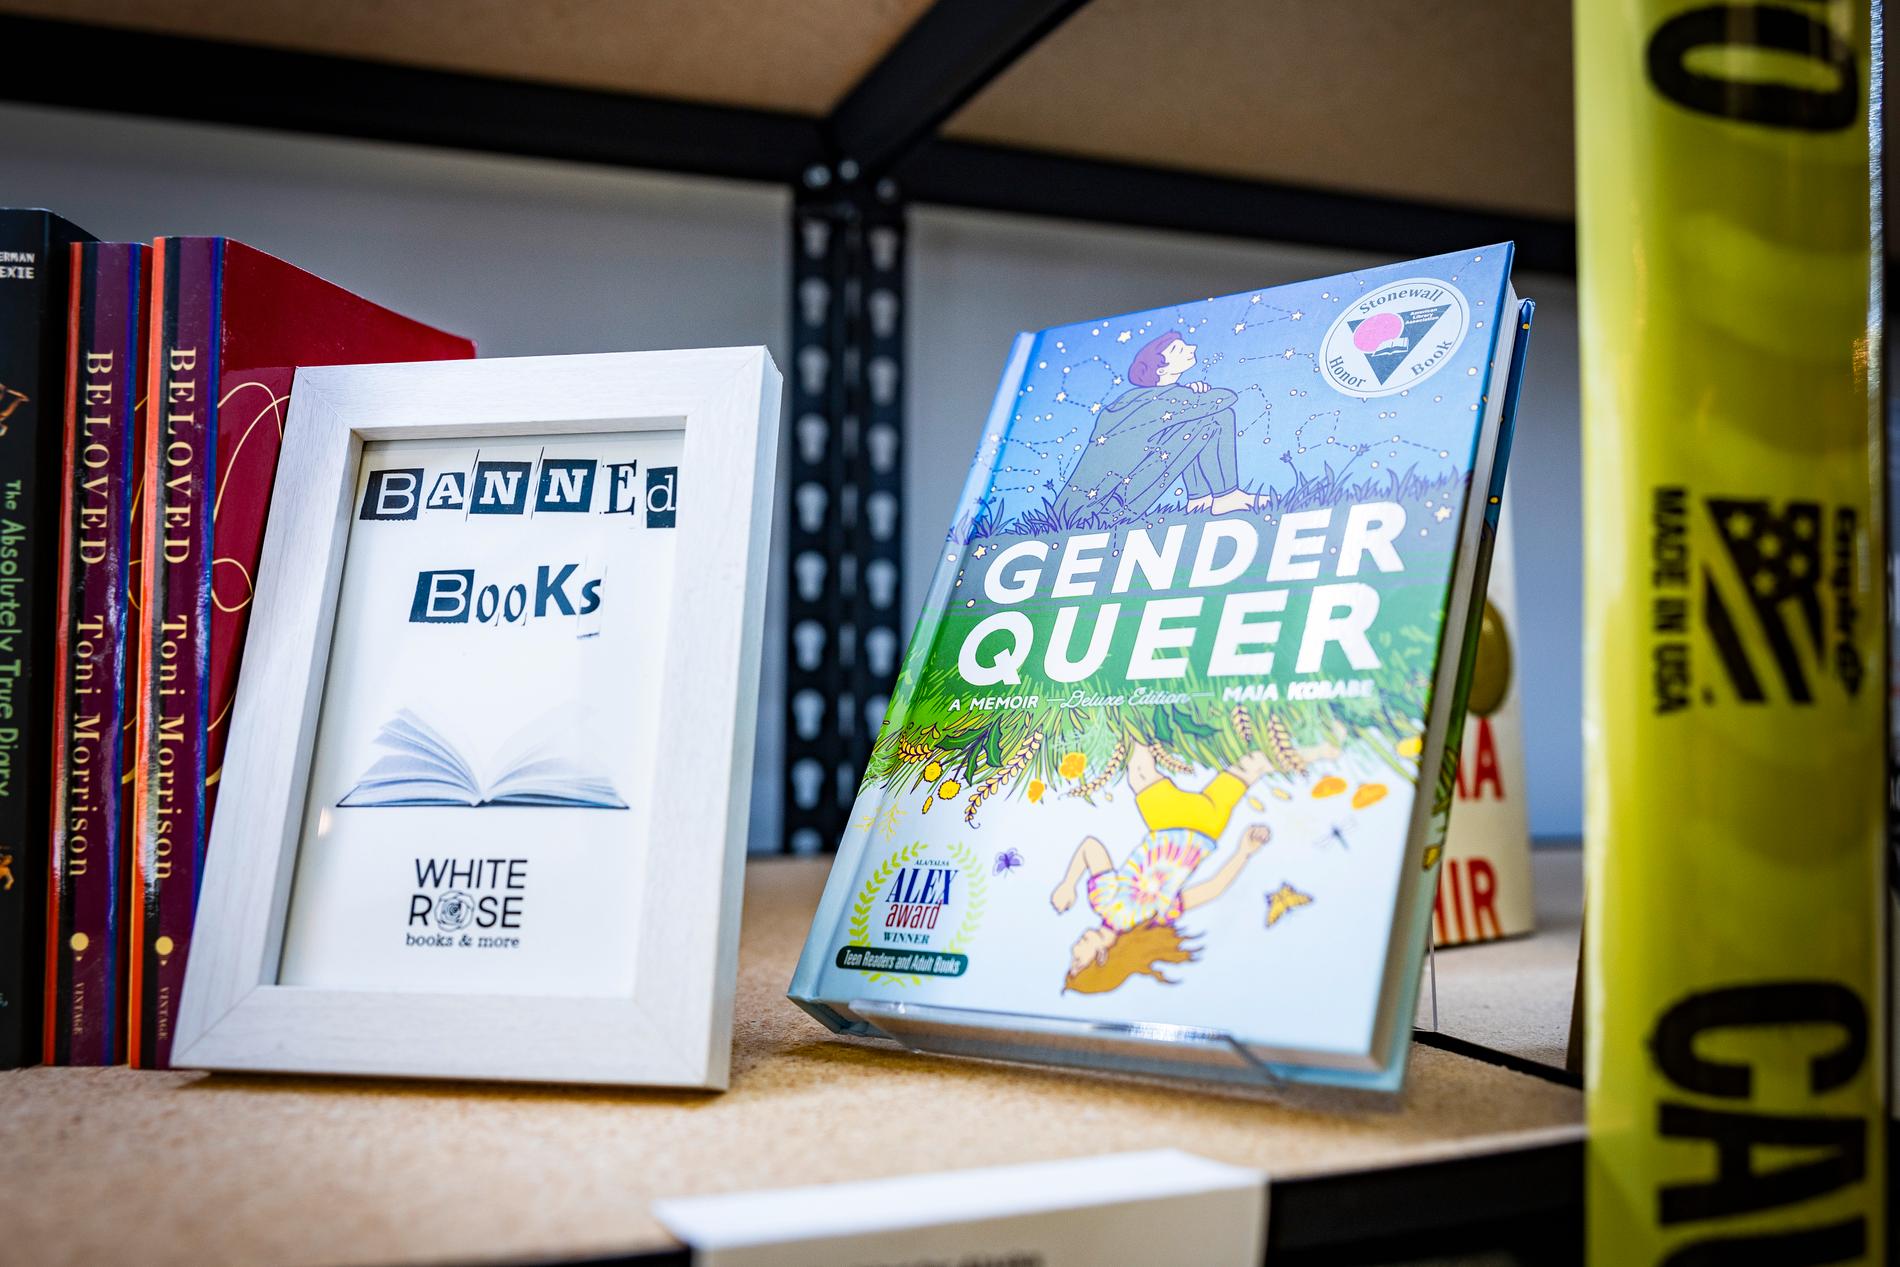  En kvinna tyckte inte att boken Gender Queer passade på skolbiblioteken.